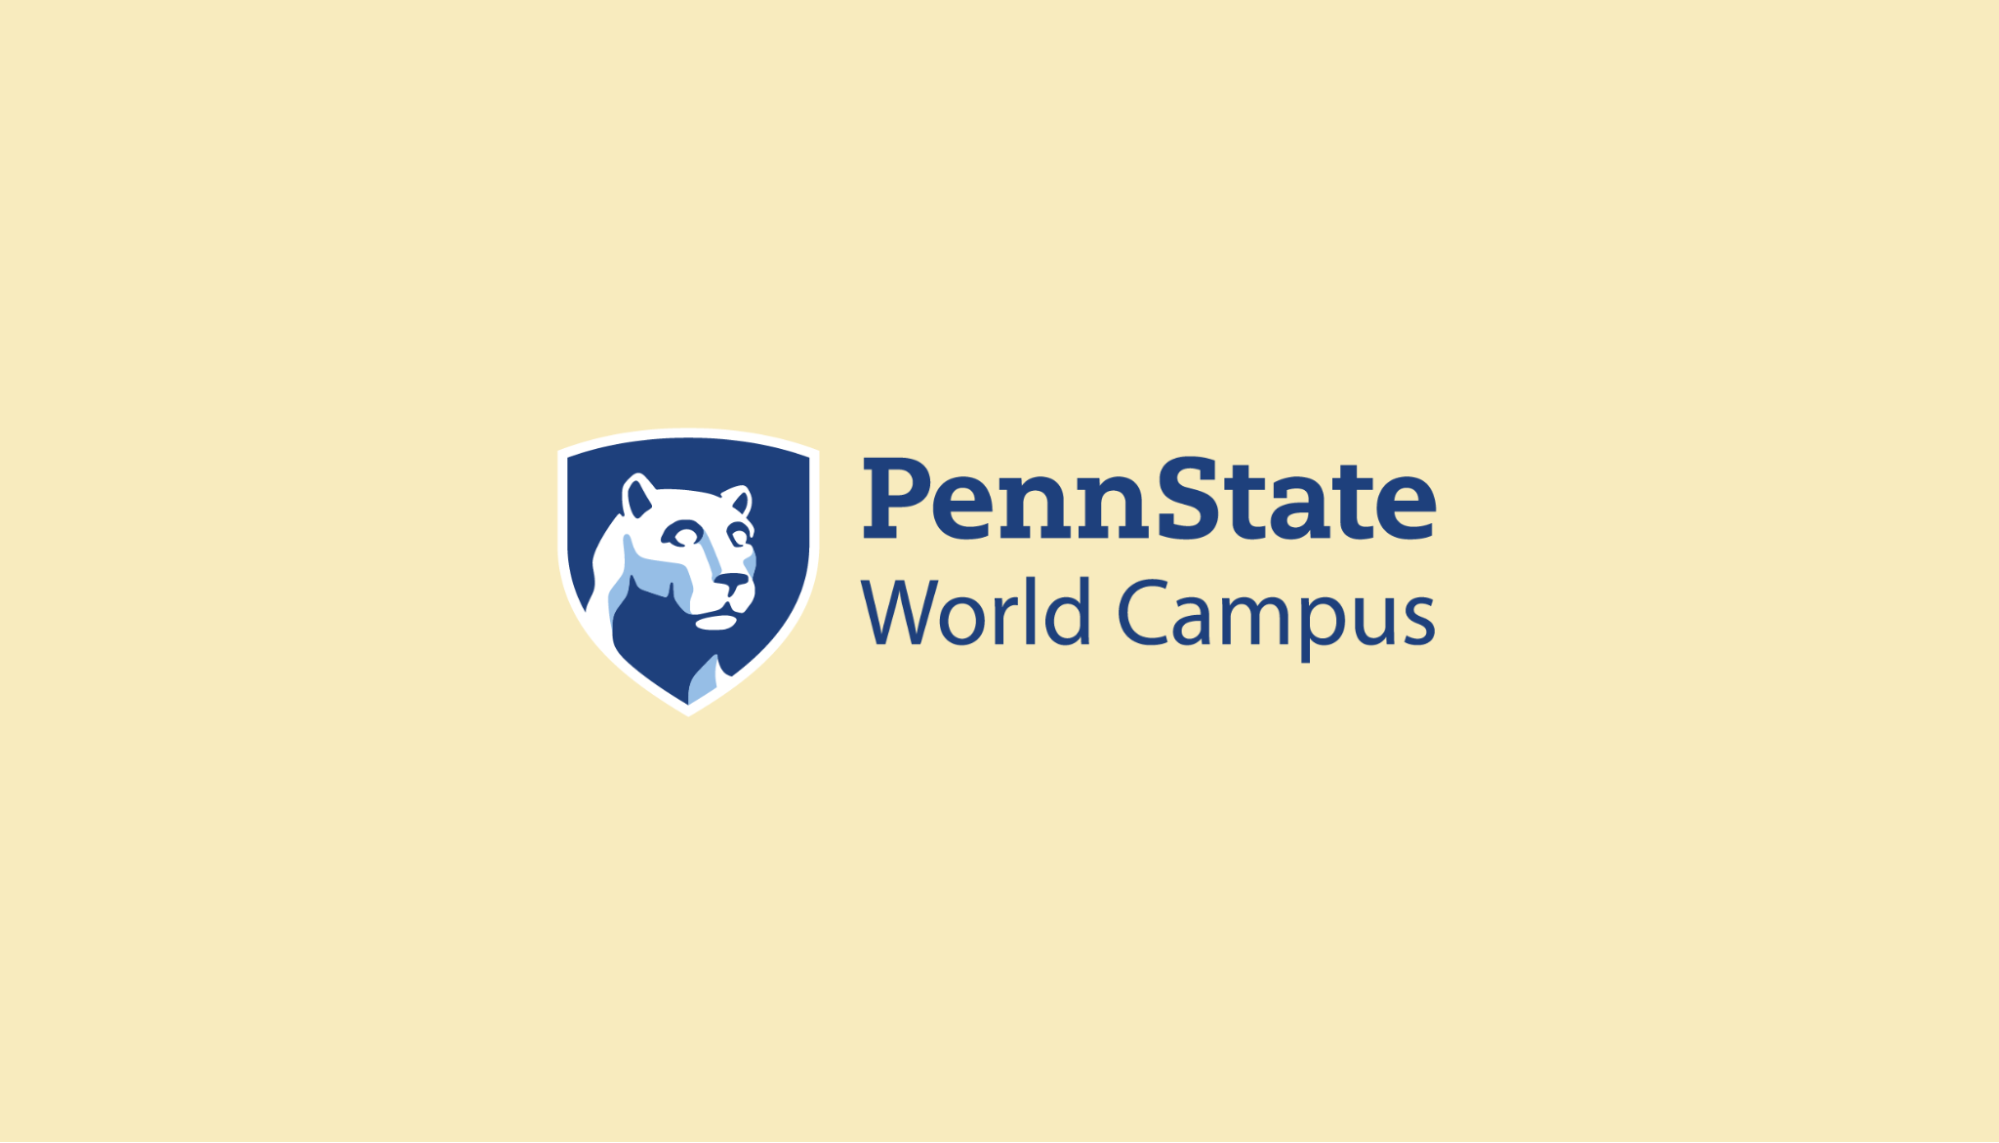 PennState World Campus